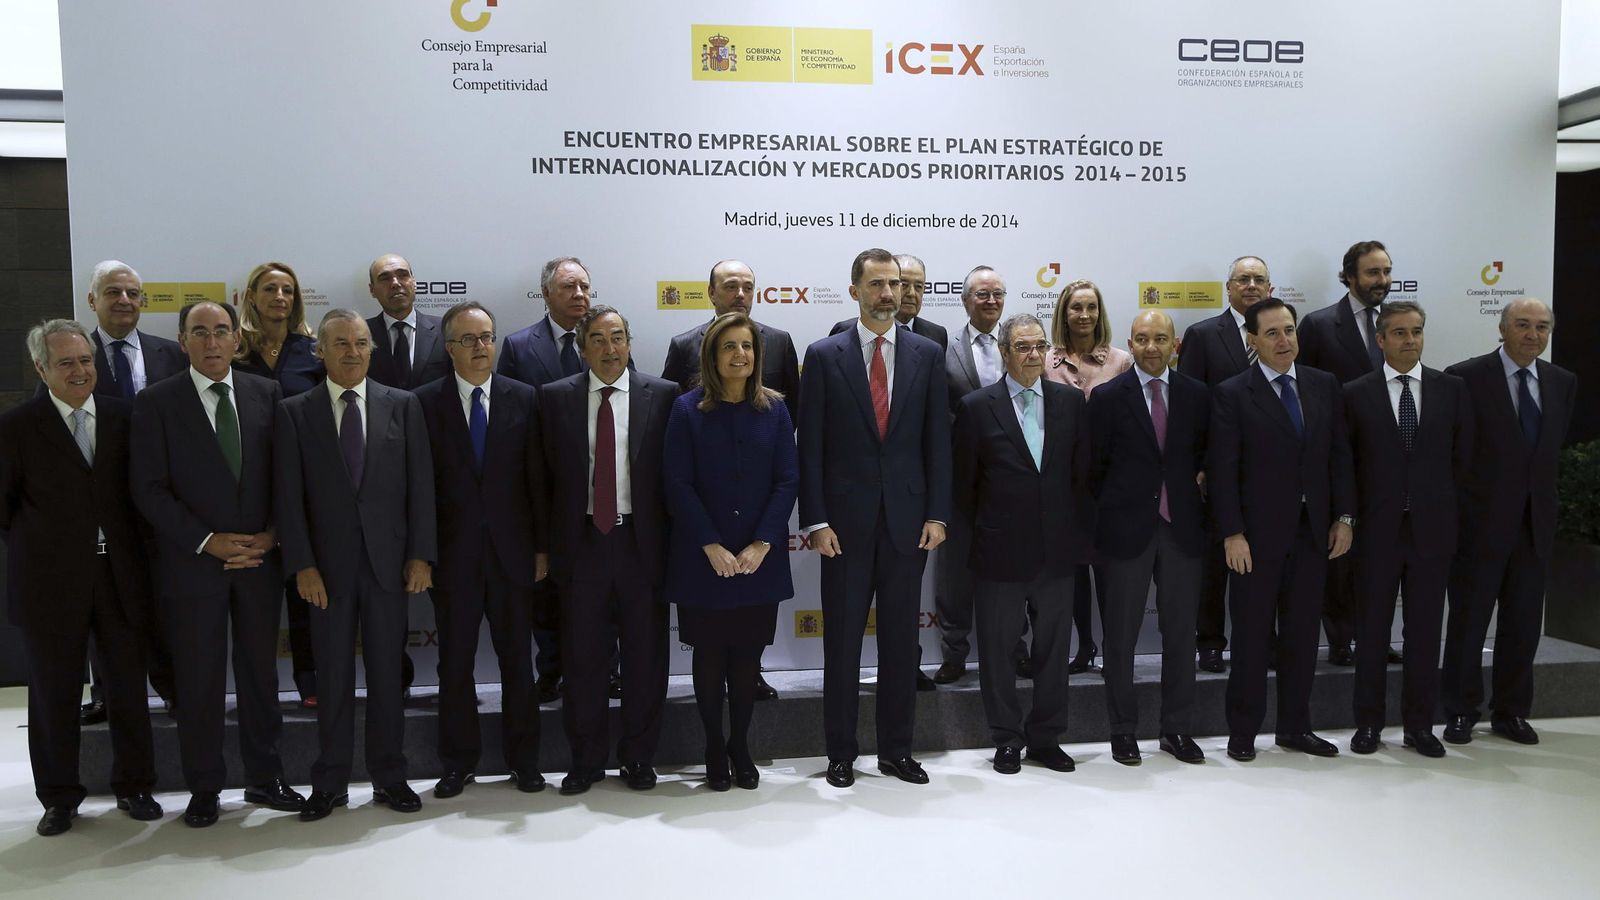 Foto: Foto de familia de Felipe VI junto a miembros del Consejo Empresarial de la Competitividad. (EFE)